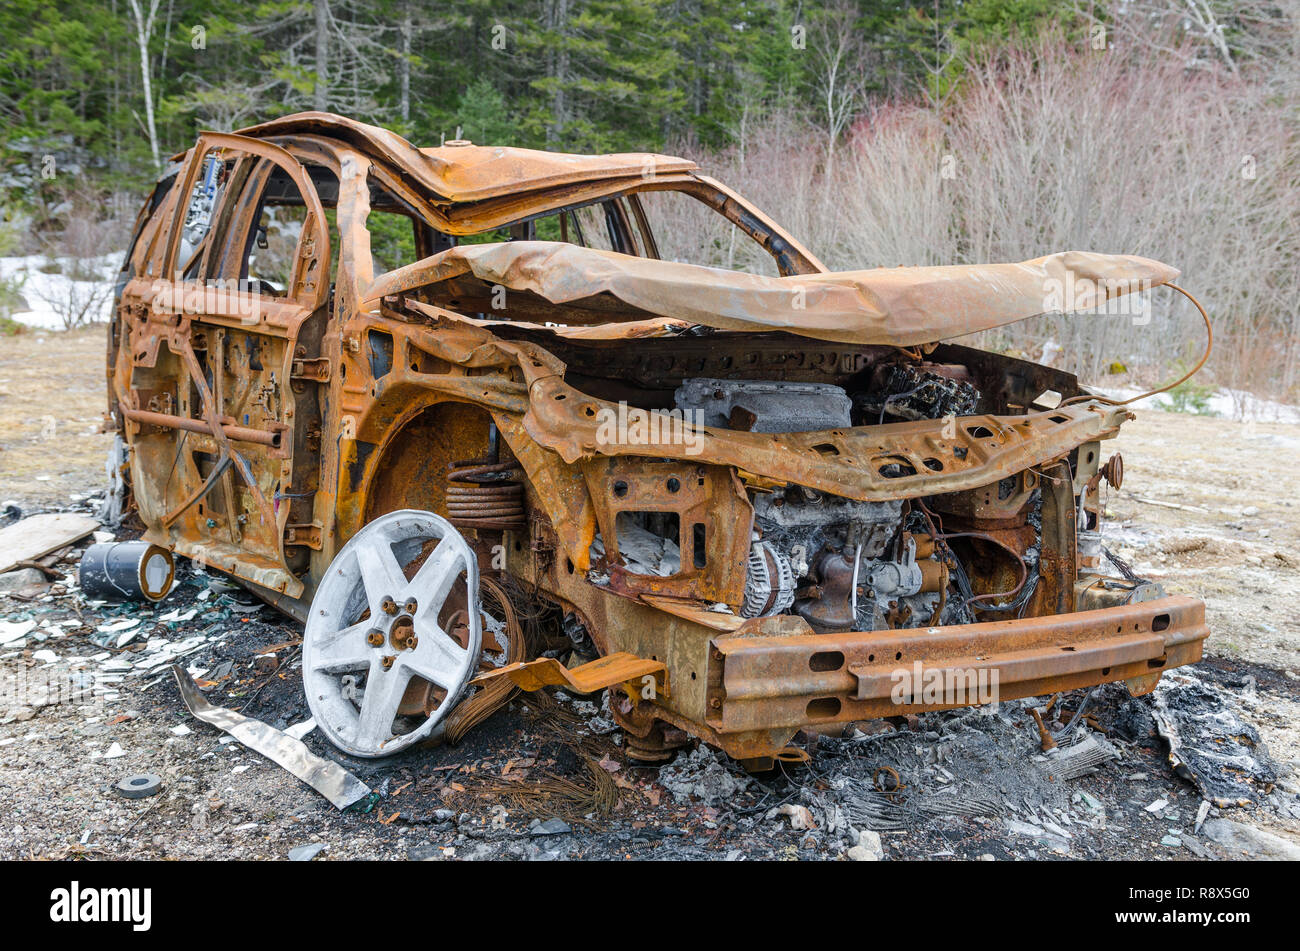 Incendiate veicolo arrugginito abbandonato nei boschi con il suo corpo cadere a causa di danni provocati dal fuoco e le forze della natura. Ottimo modo per illustrare l'assicurazione. Foto Stock